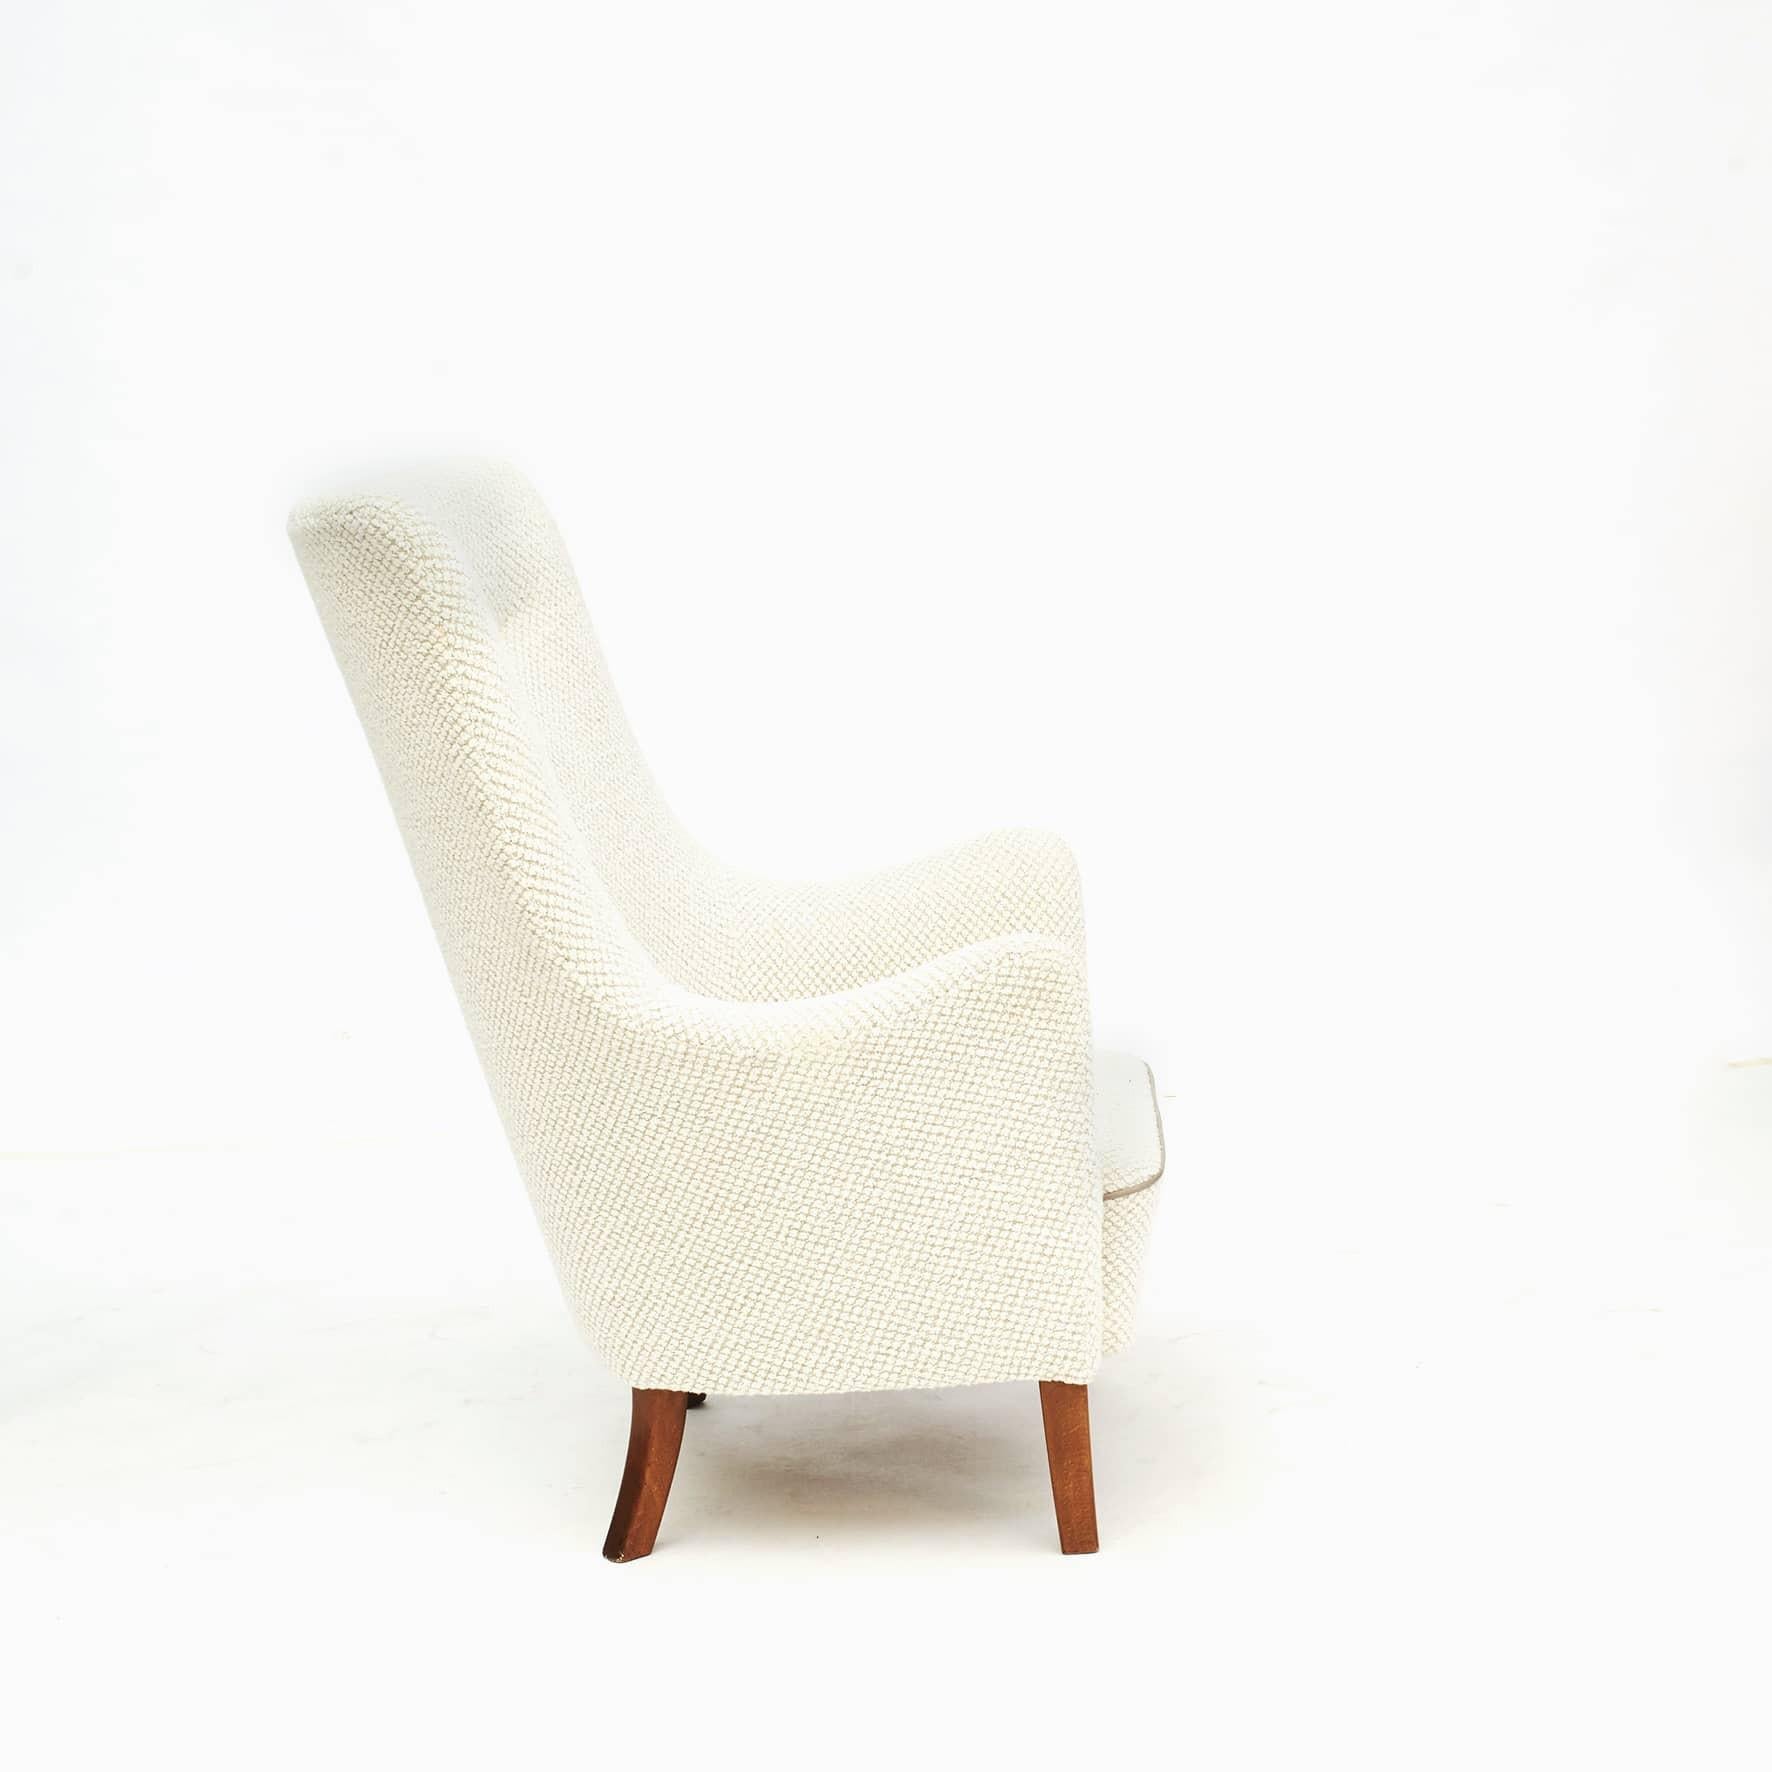 Dänischer Sessel mit hoher Rückenlehne, 1940-1950.
Der Sitz mit Spiralfedern, die Beine aus dunkel polierter Buche.
Neu gepolstert mit cremefarbenem Bouclé-Stoff von Nobilis.

Der Stuhl ist sehr bequem und in gutem Zustand.